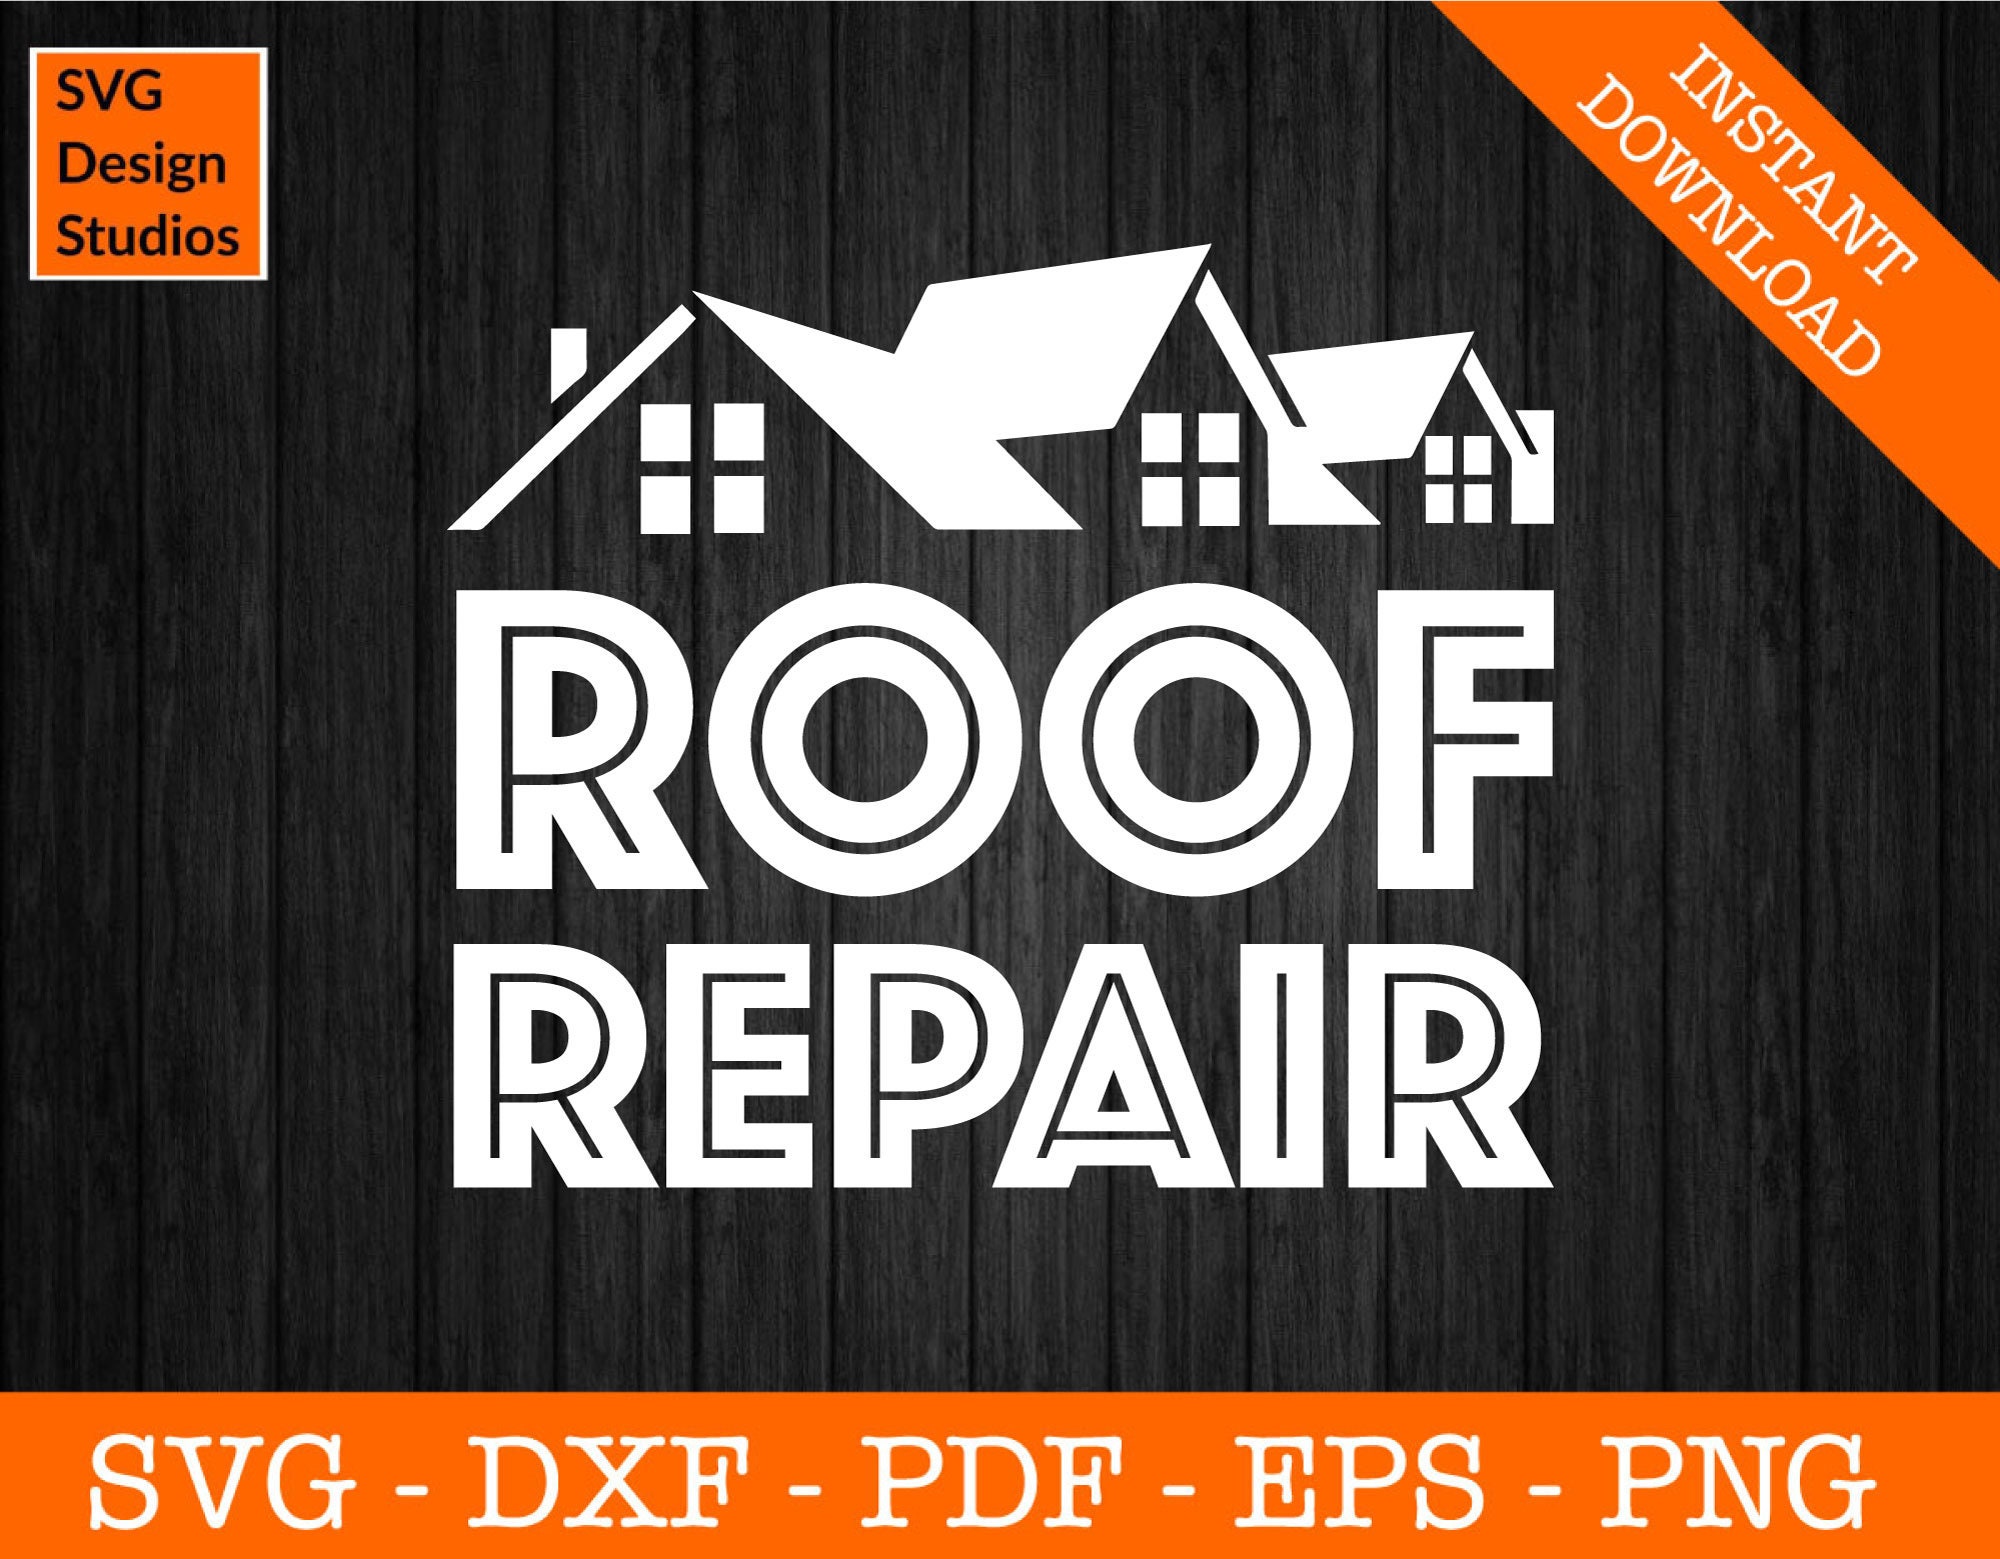 Roof Repair Logo Svg, Roofing Svg, Roofer Svg, Eps, Dxf, Png, Pdf ...